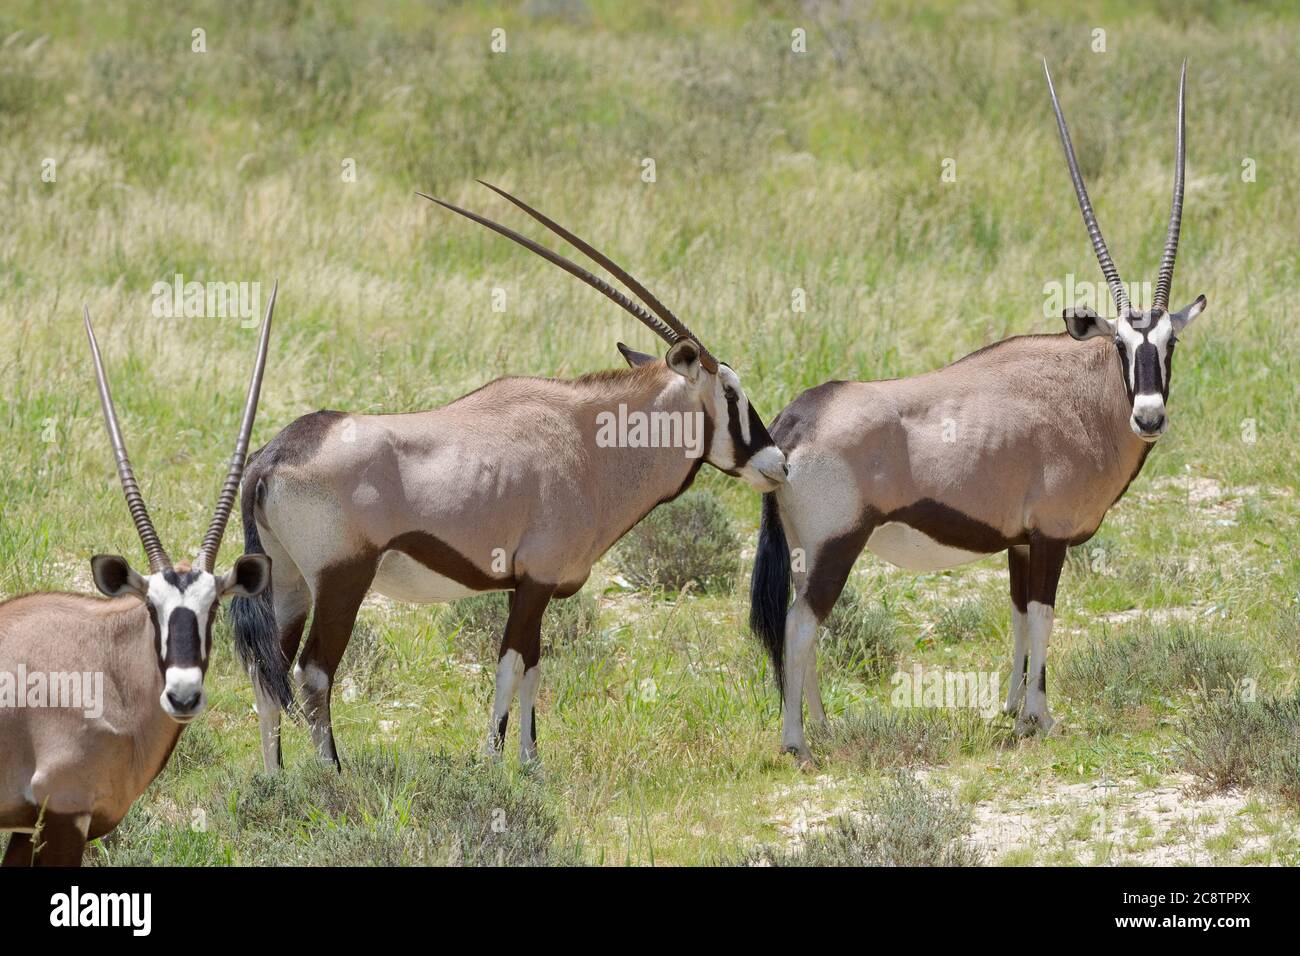 Gemsboks (Oryx gazella), debout sur l'herbe, curieux, Parc transfrontalier Kgalagadi, Cap Nord, Afrique du Sud, Afrique Banque D'Images